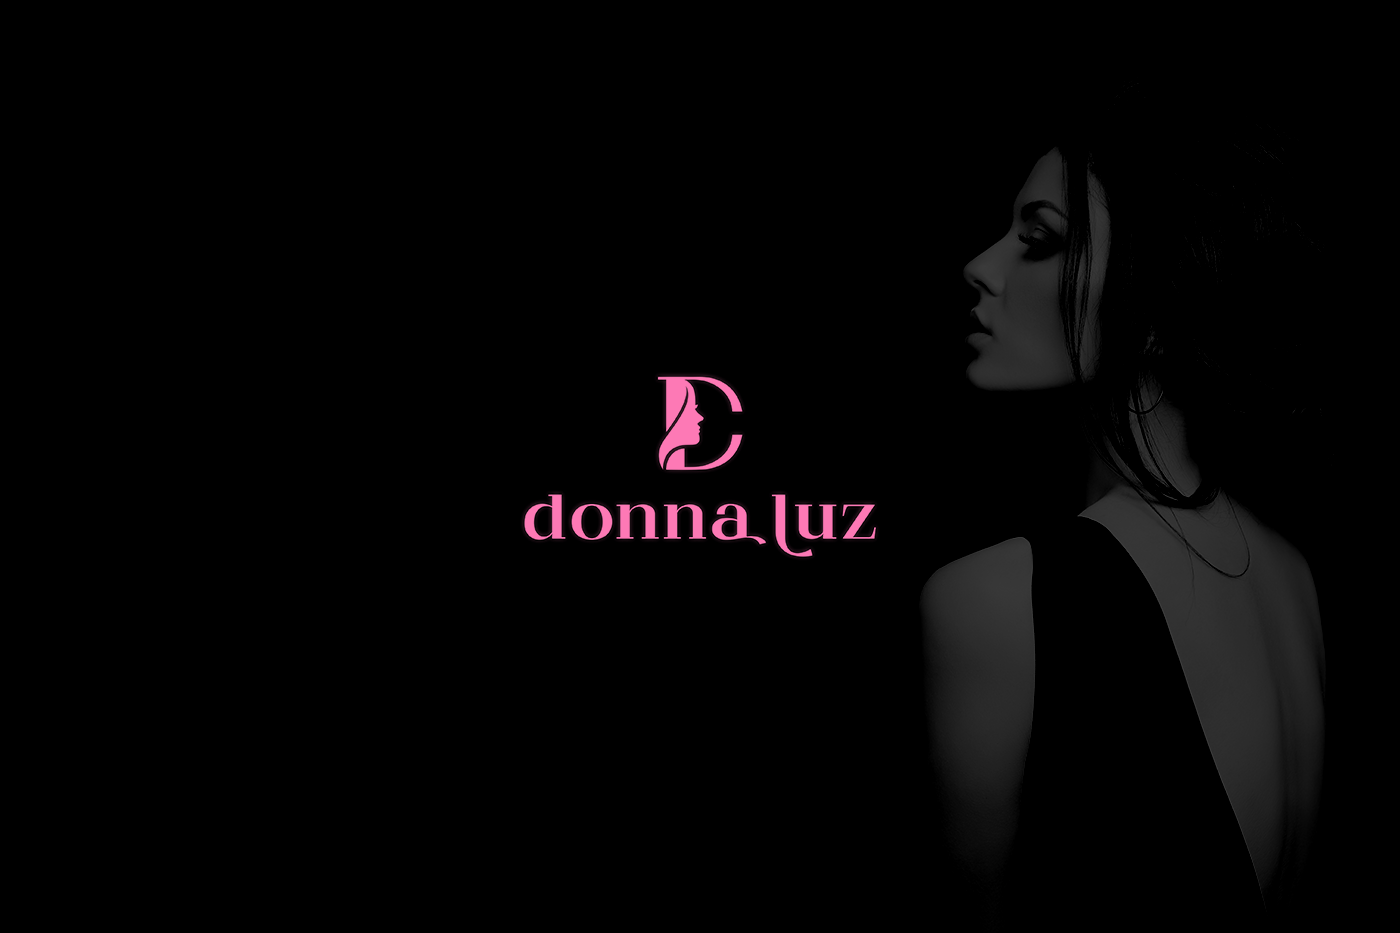 DONNA-LUZ_01